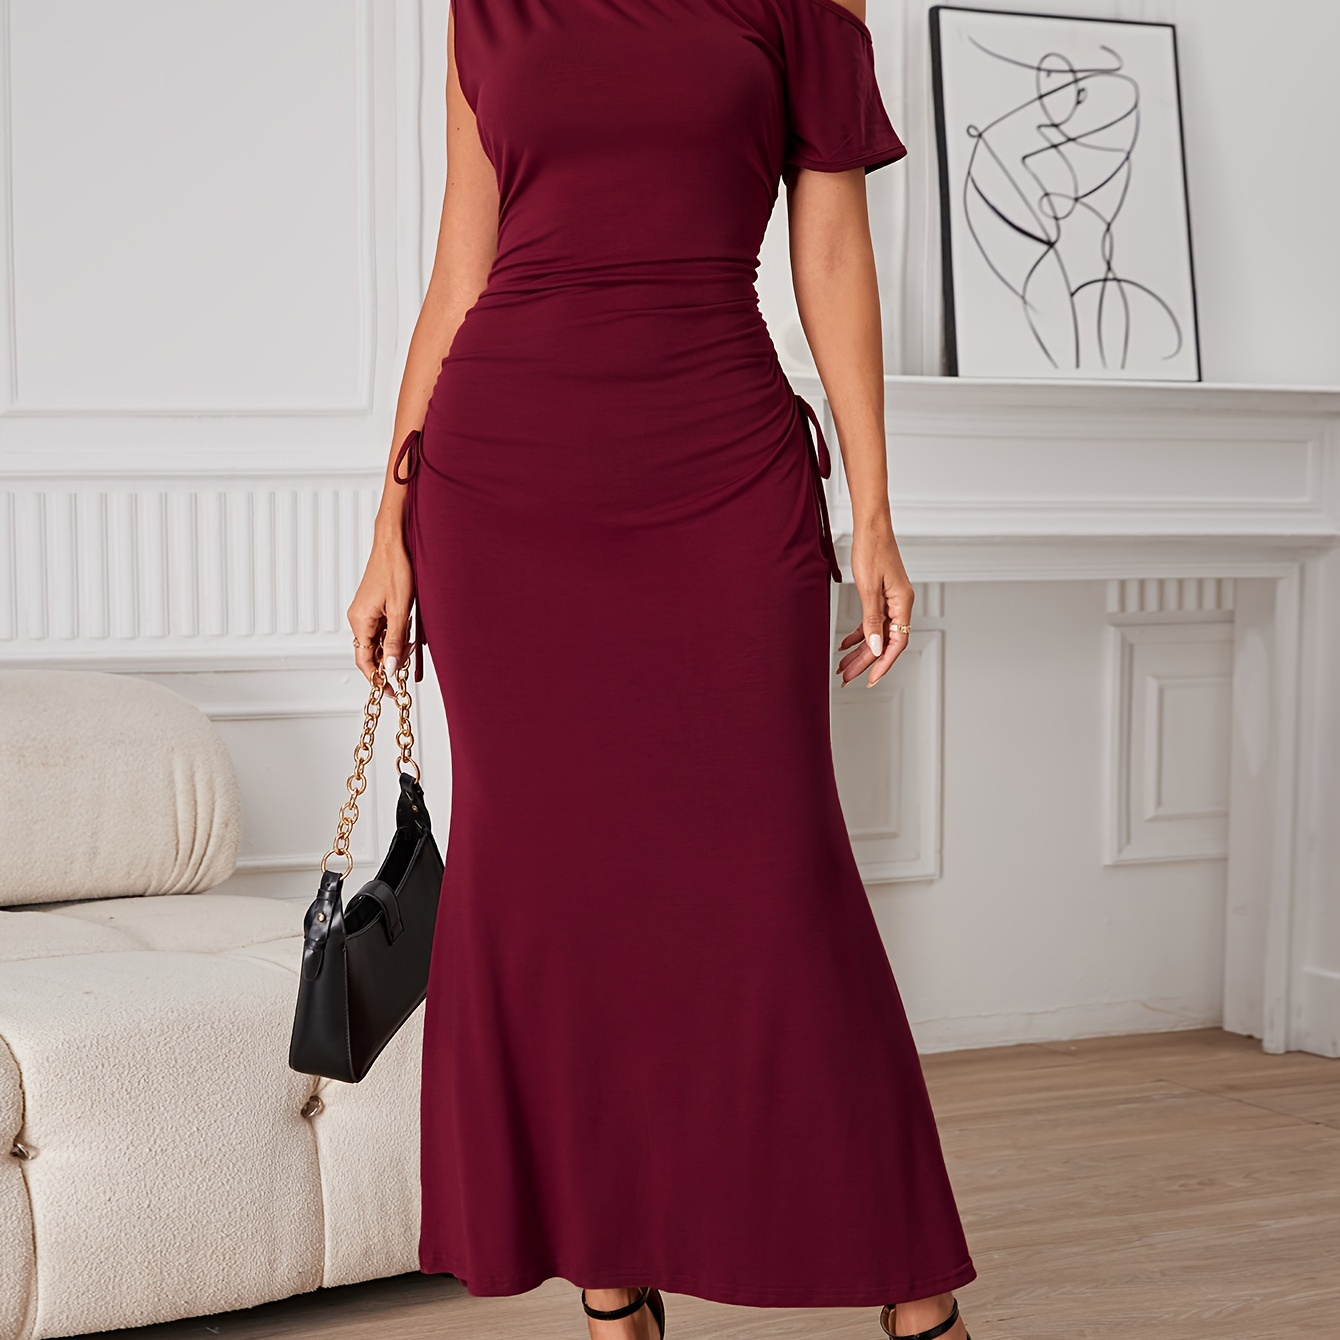 

Solid 1 Shoulder Dress, Elegant Ruched Short Sleeve Lace Up Dress, Women's Clothing For Elegant Dressing